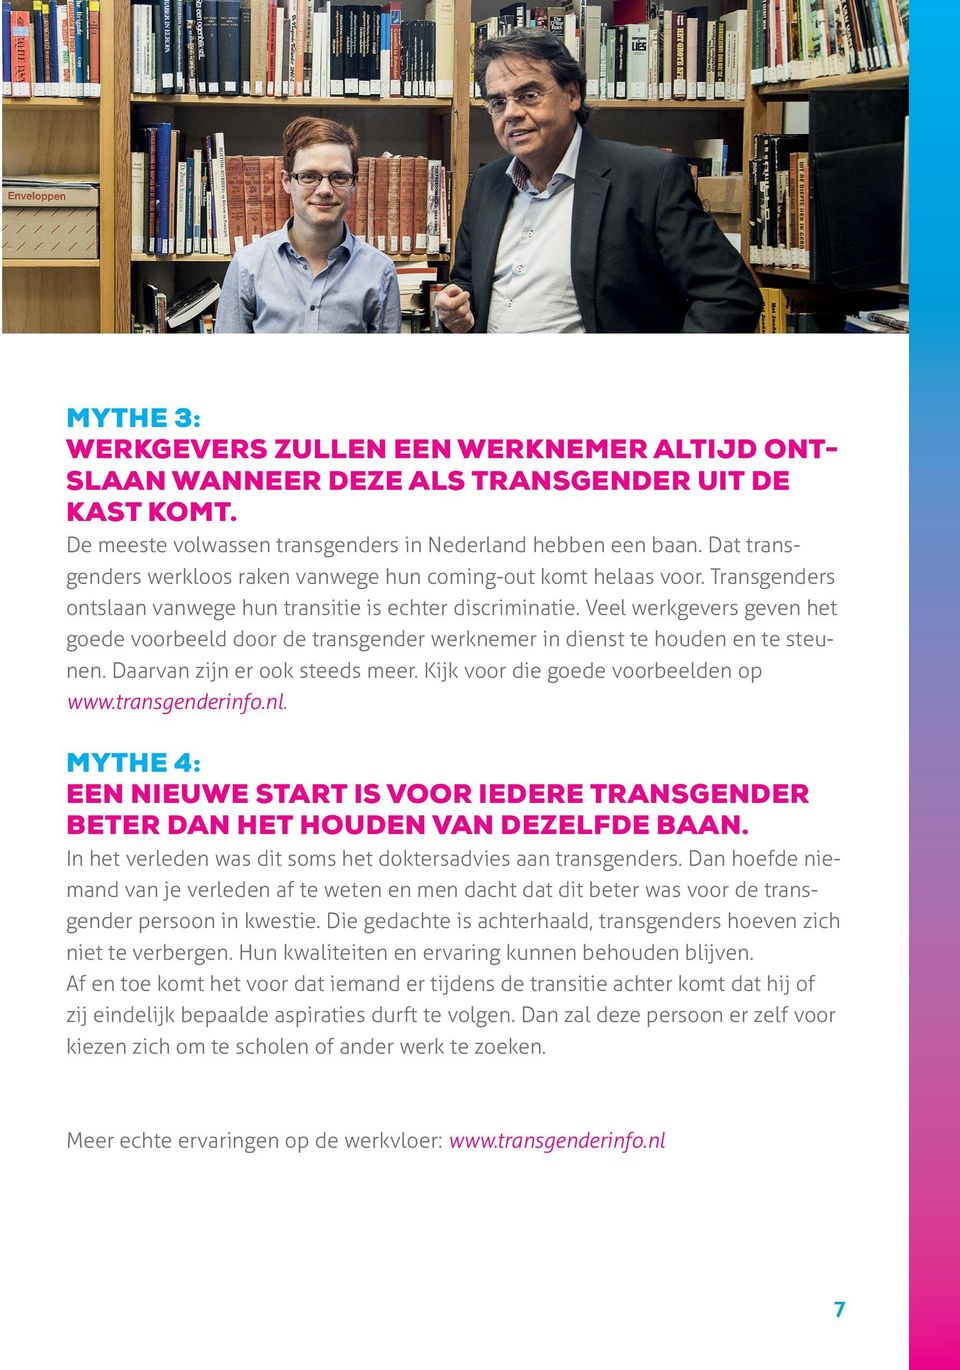 Veel werkgevers geven het goede voorbeeld door de transgender werknemer in dienst te houden en te steunen. Daarvan zijn er ook steeds meer. Kijk voor die goede voorbeelden op www.transgenderinfo.nl.